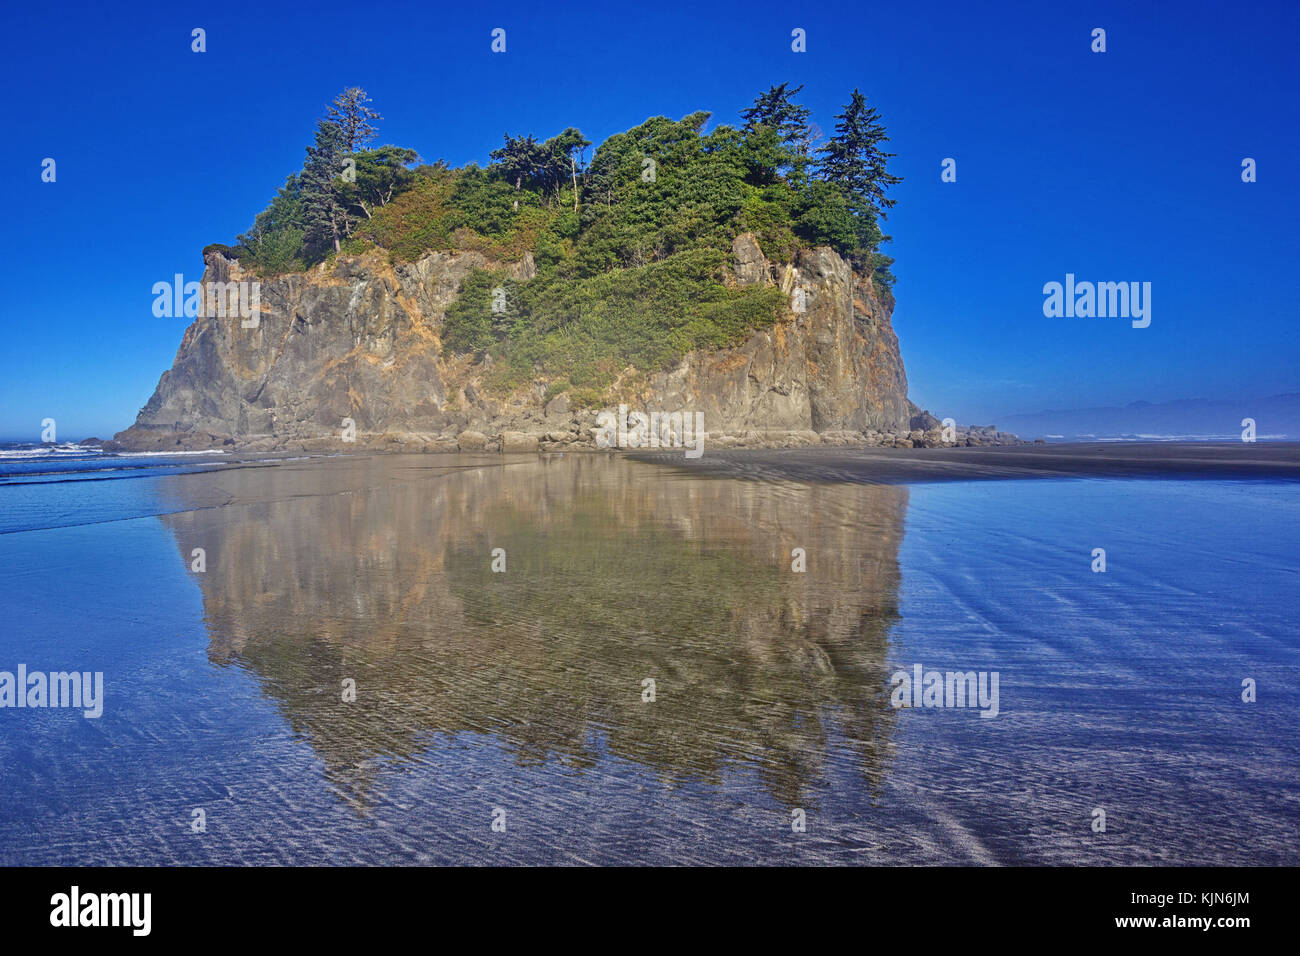 Abbazia isola riflessa nell'acqua al ruby beach nel parco nazionale di Olympic nello stato di Washington, parte di american regione nordoccidentale. Foto orizzontale con Foto Stock